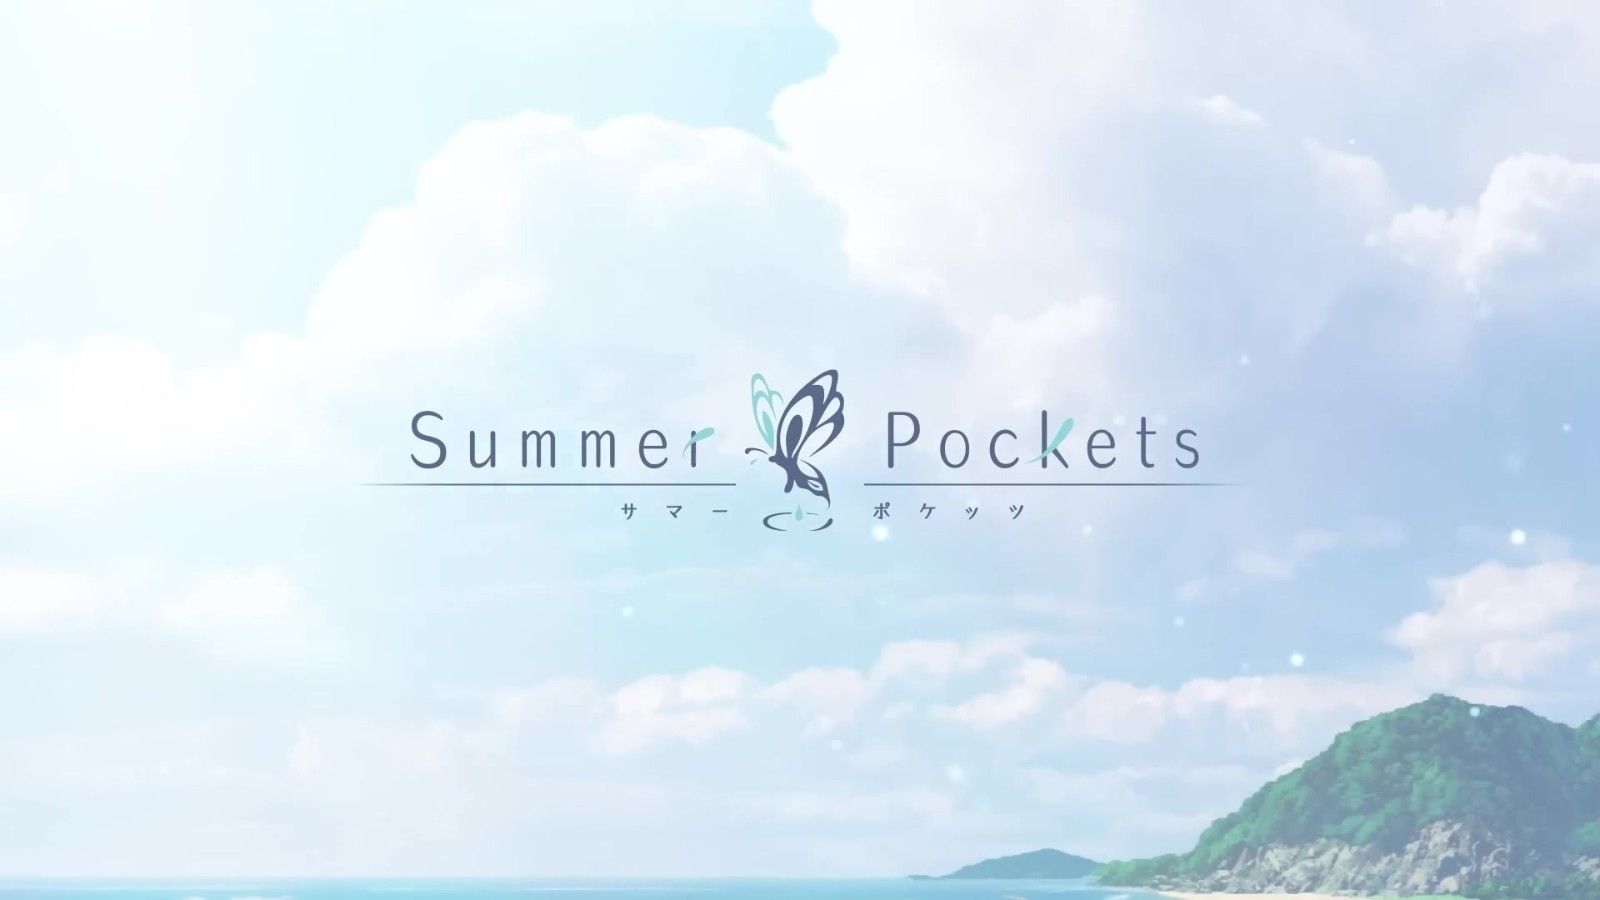 Key社视觉小说《Summer Pockets》改编动画公布